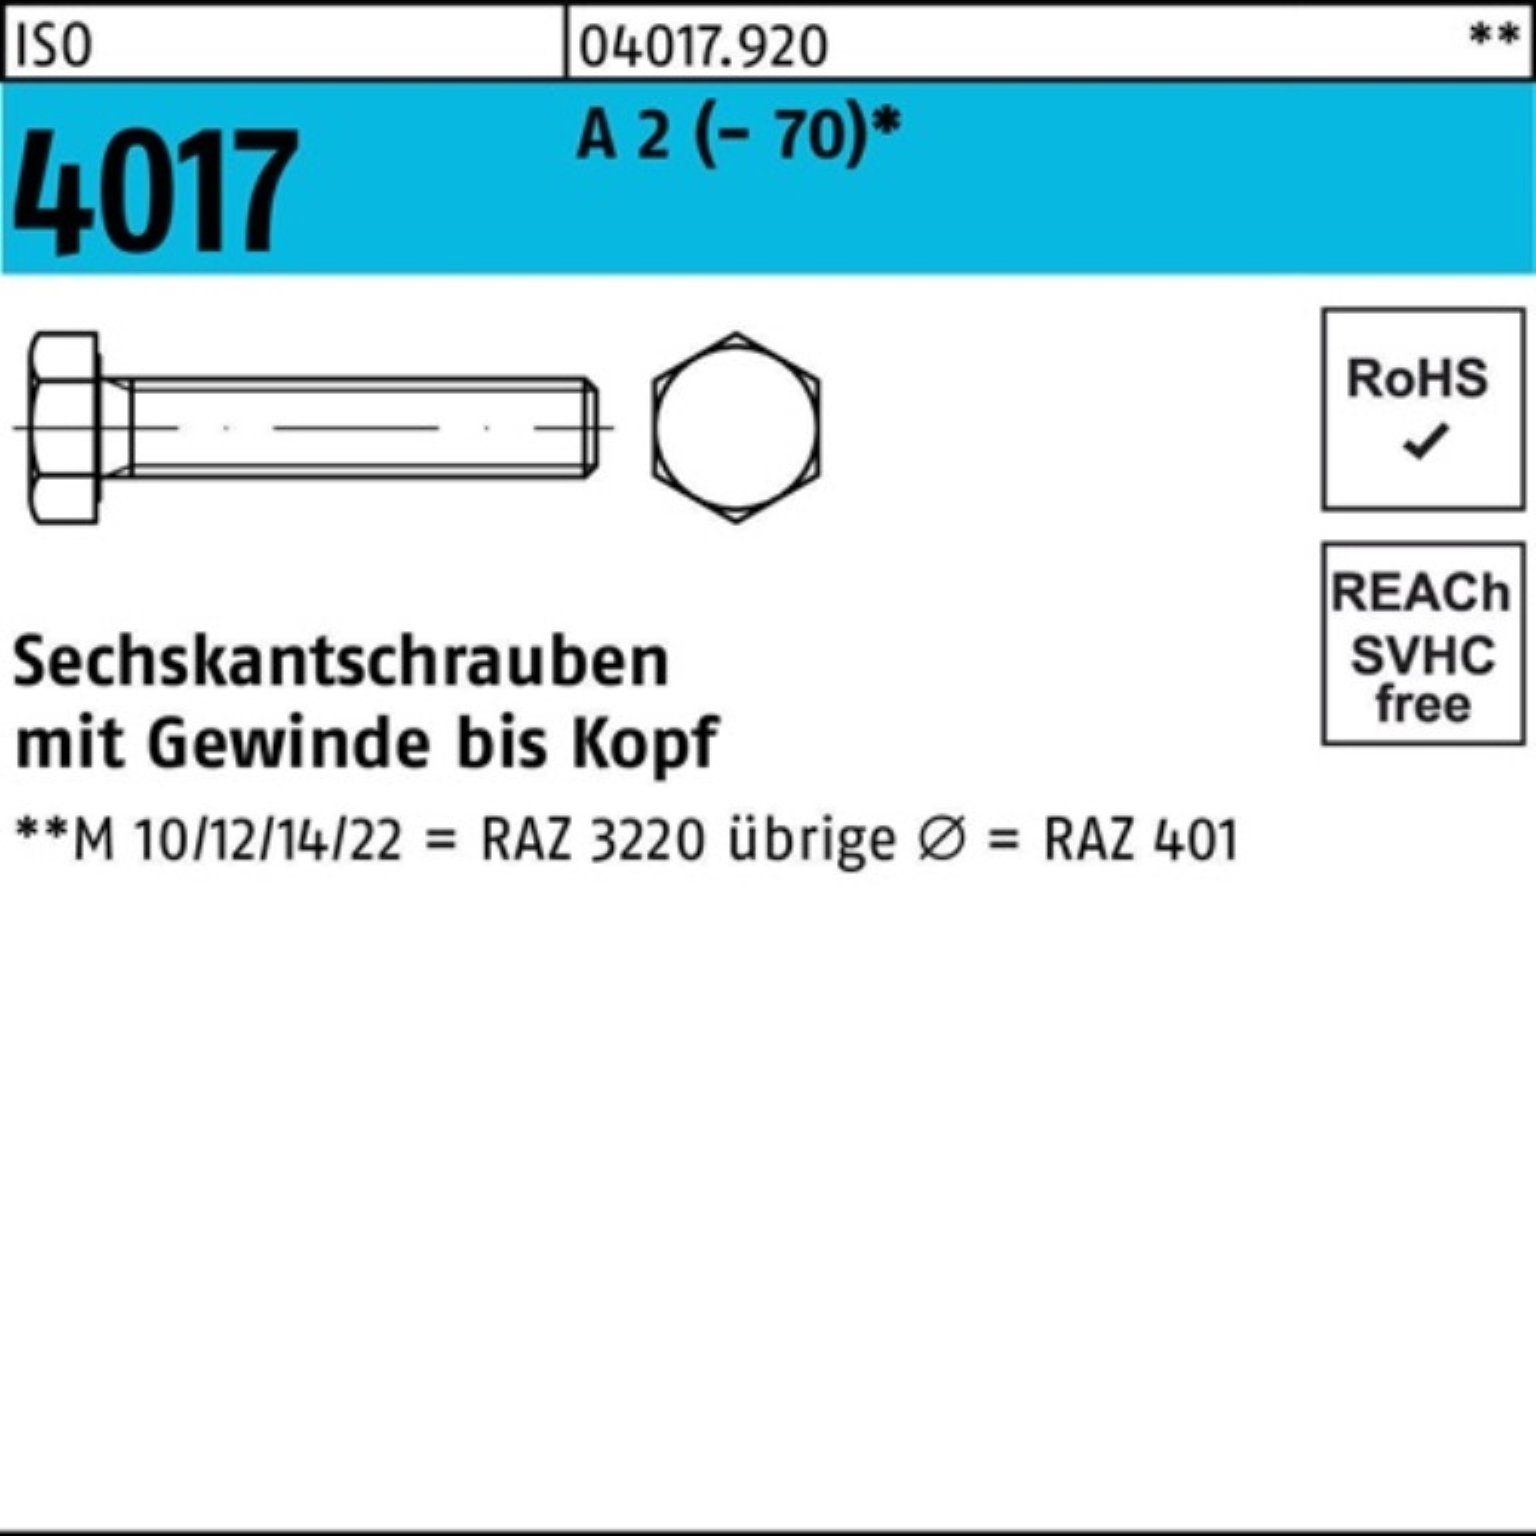 Bufab Sechskantschraube 100er Pack Sechskantschraube ISO 4017 VG M20x 100 A 2 (70) 10 Stück